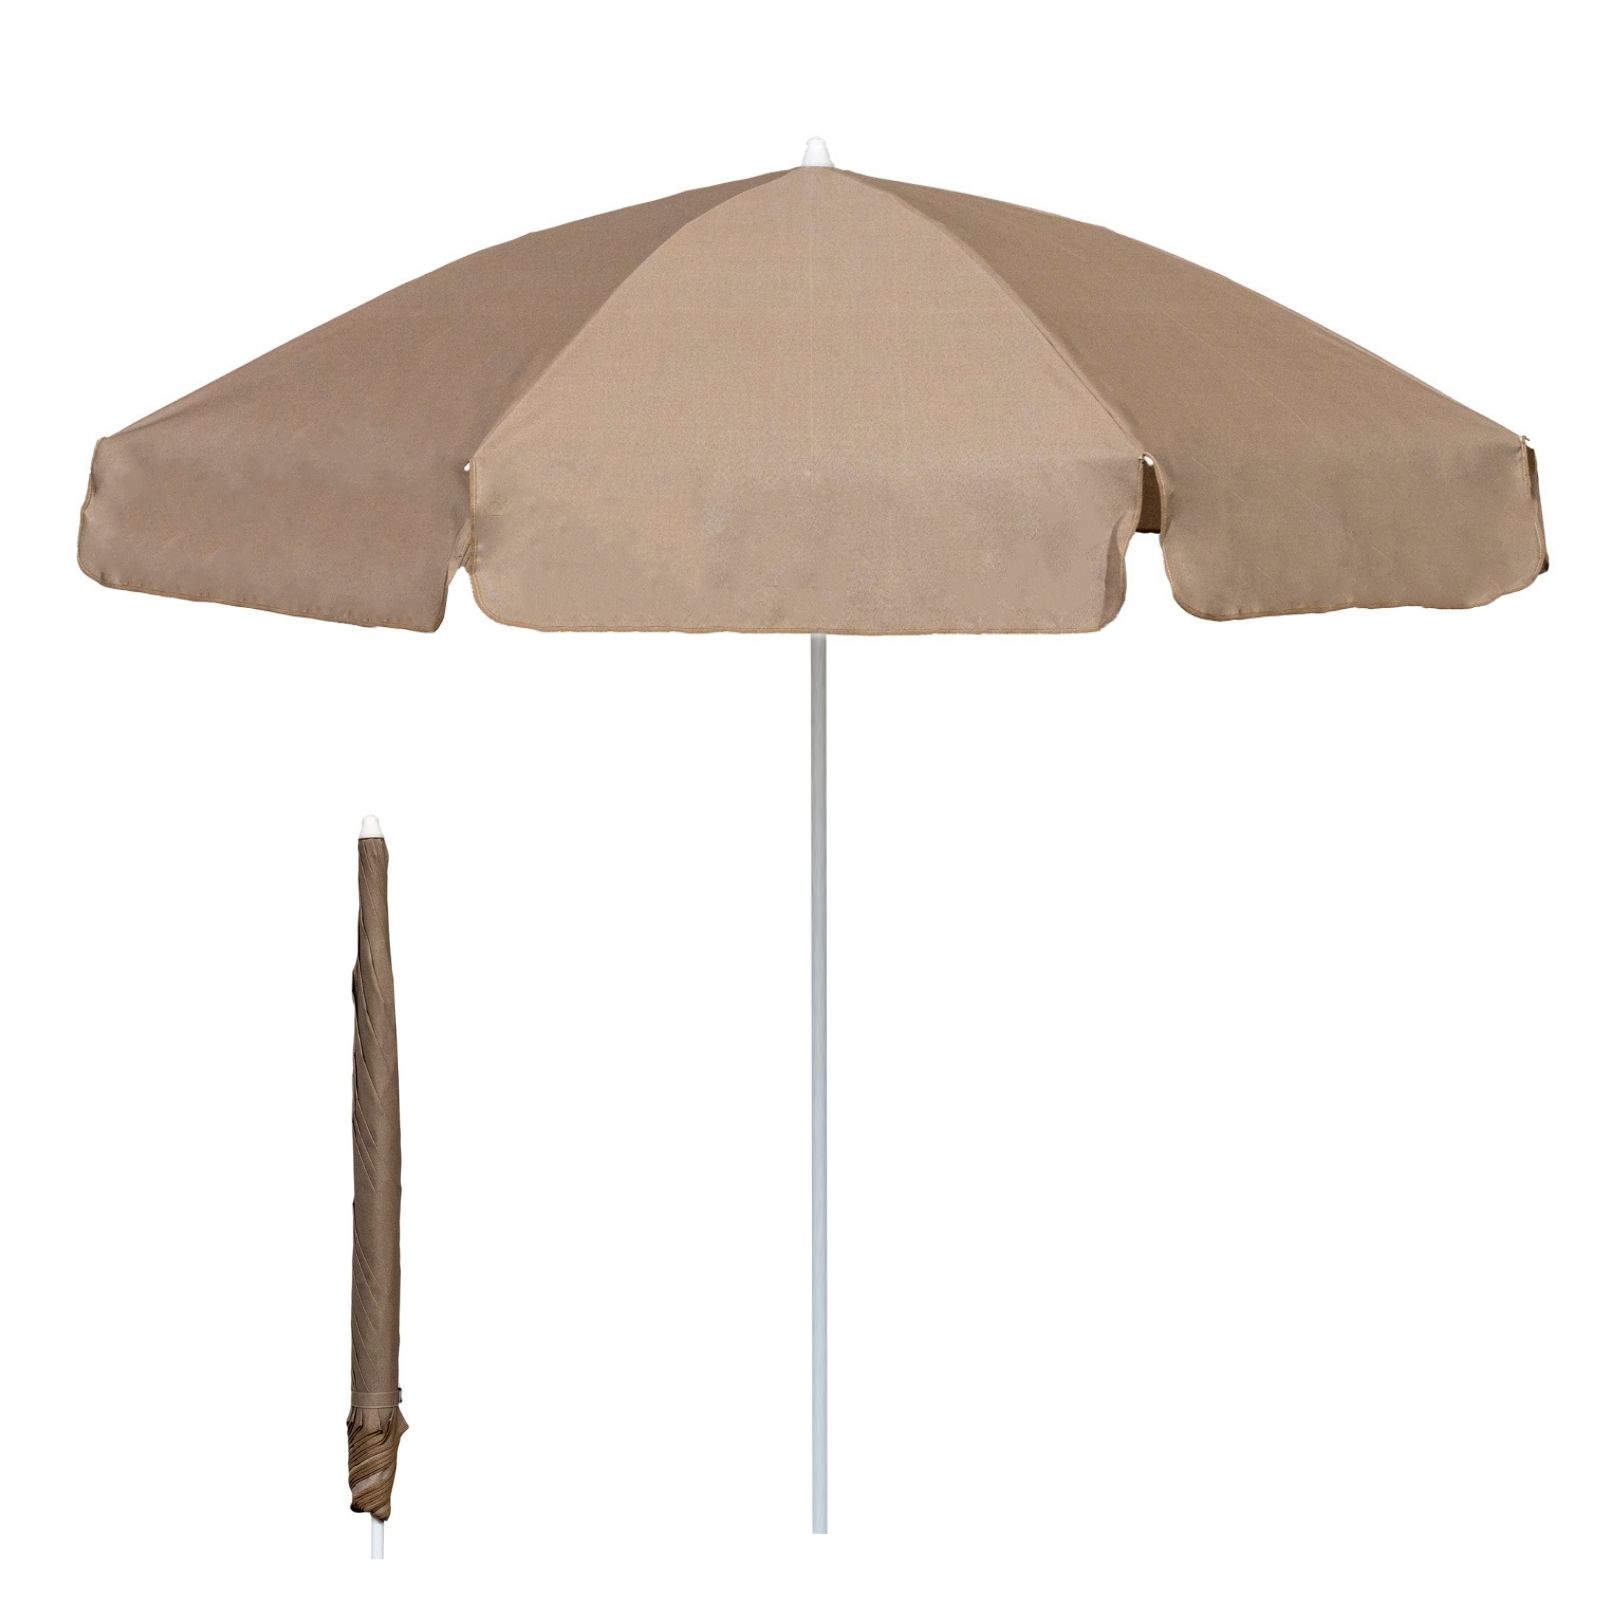 elf Harnas Moeras Garden Umbrellas/Pub Parasols - 2m Diameter - Wholesale Trade Prices